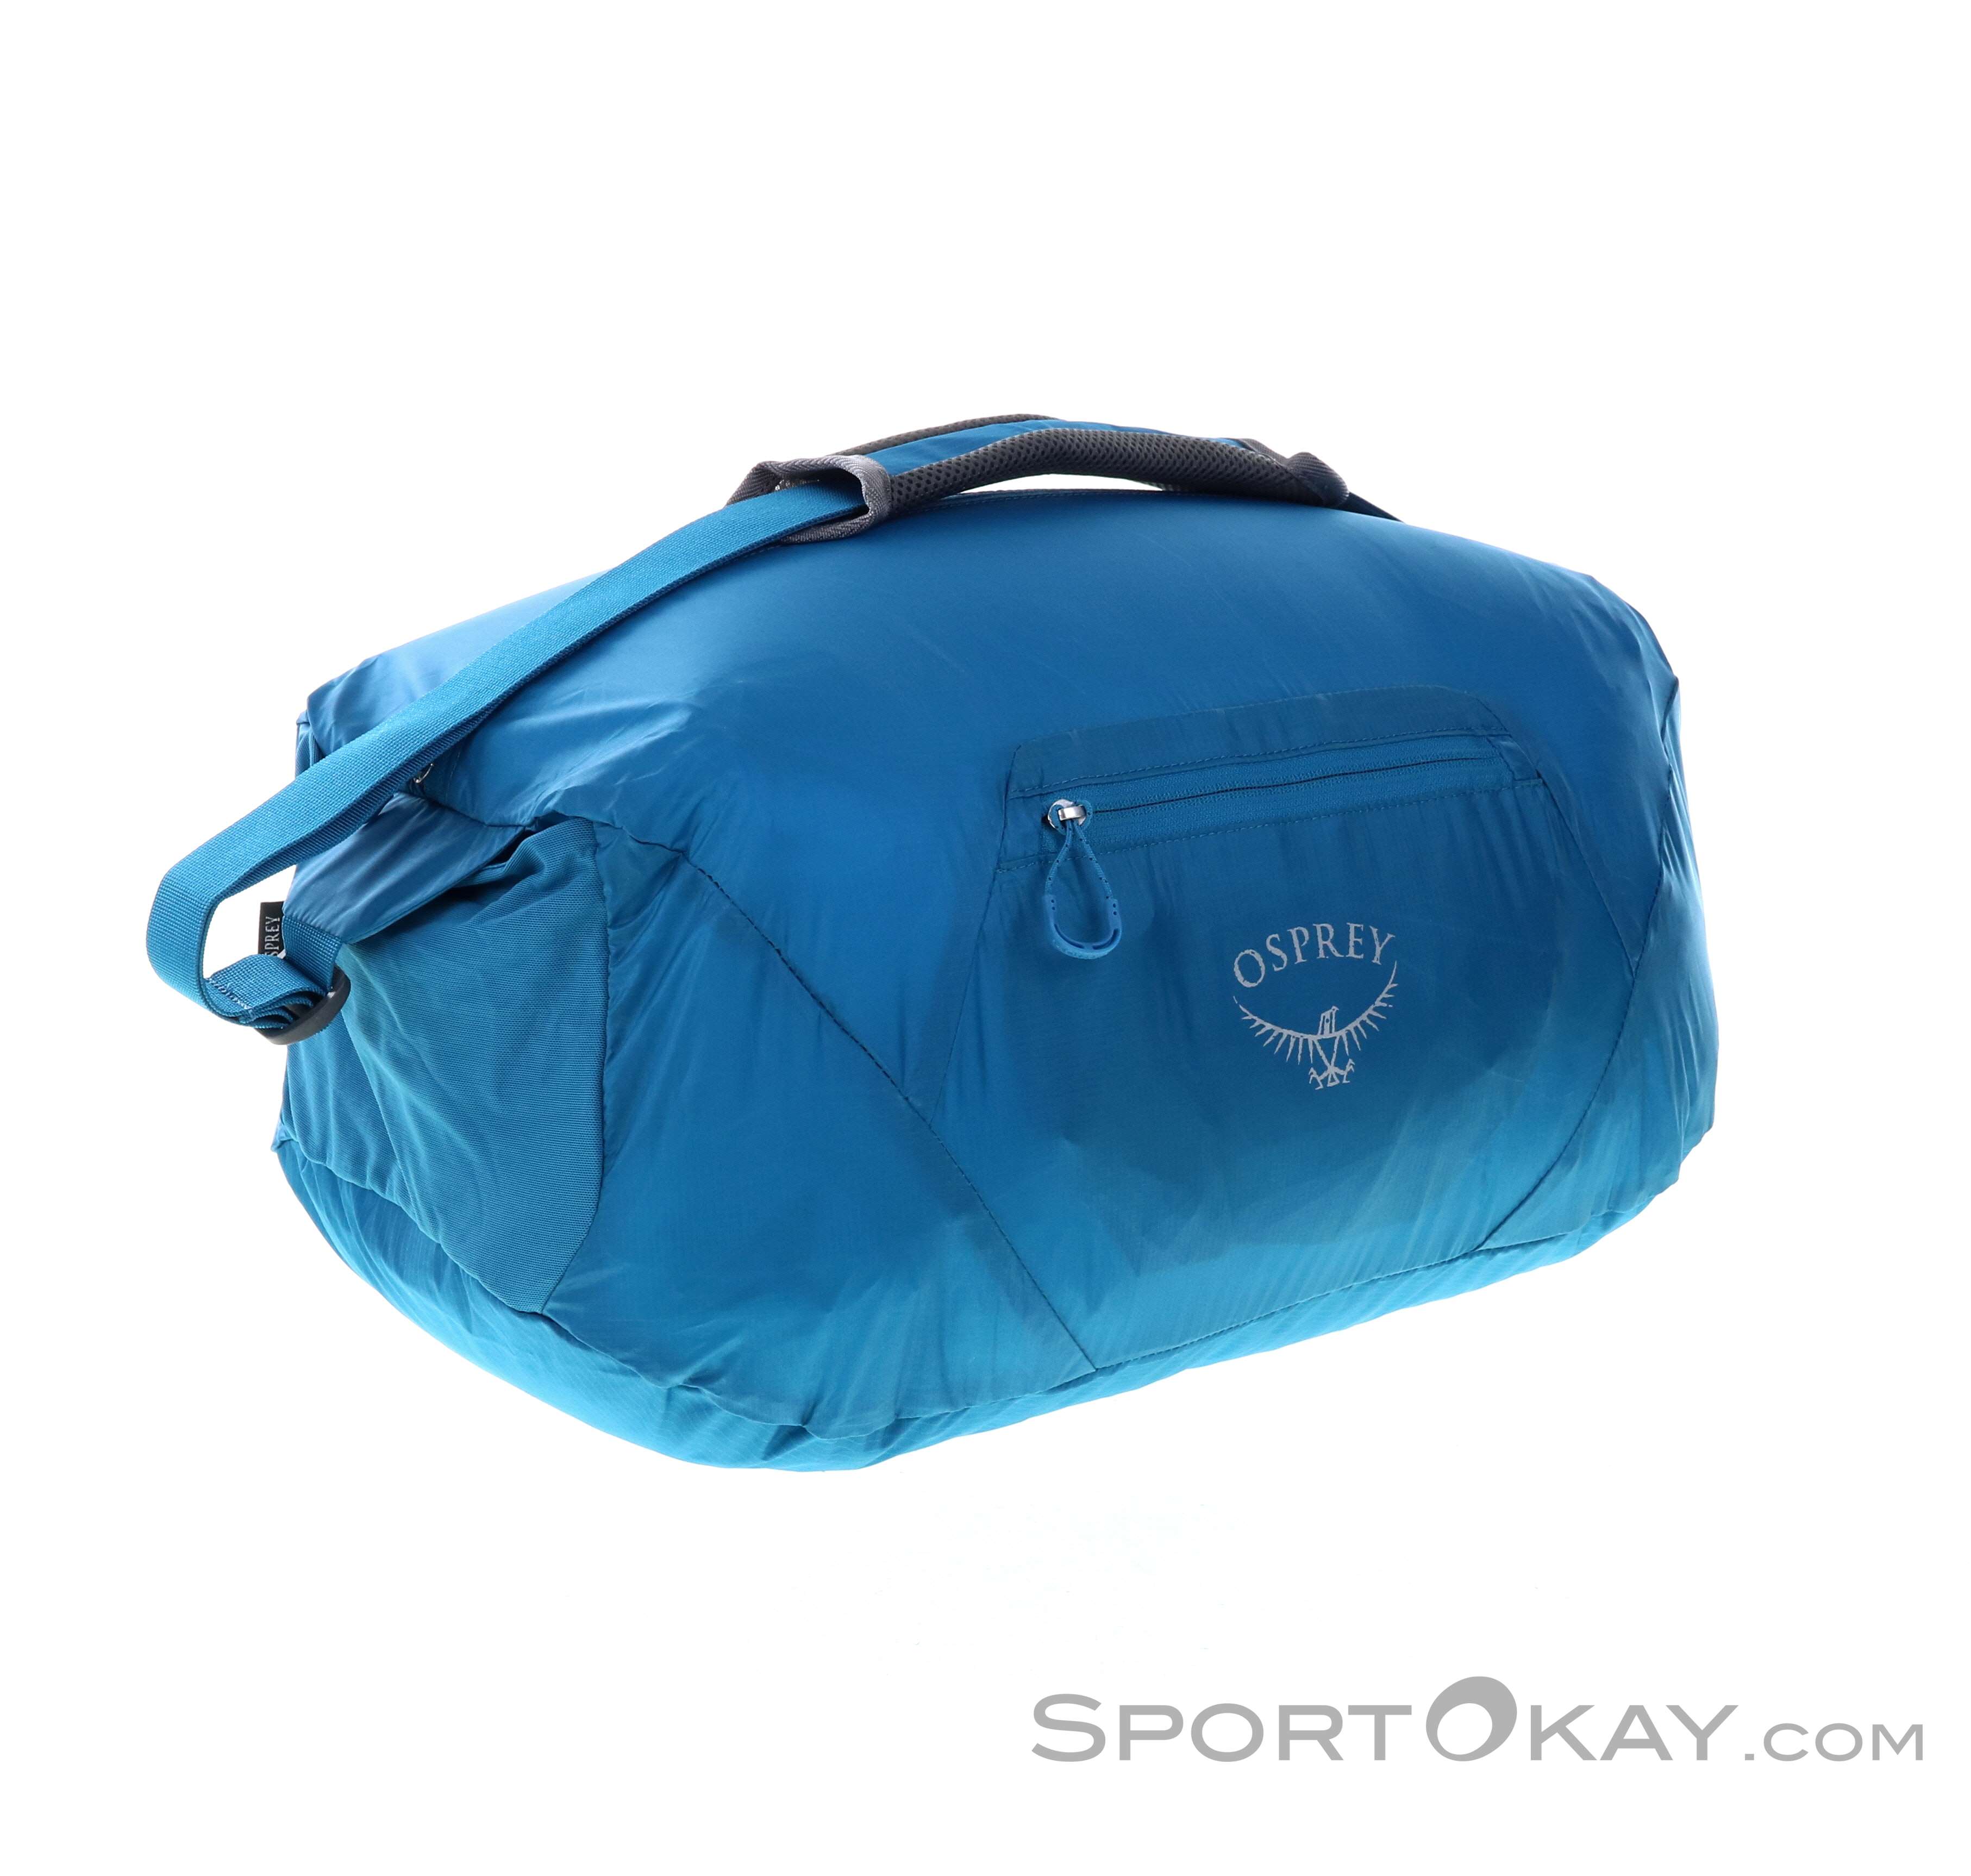 gemeenschap Vergelijken september Osprey Ultralight Stuff Duffel 30l Travelling Bag - Bags - Leisure Bags -  Fashion - All